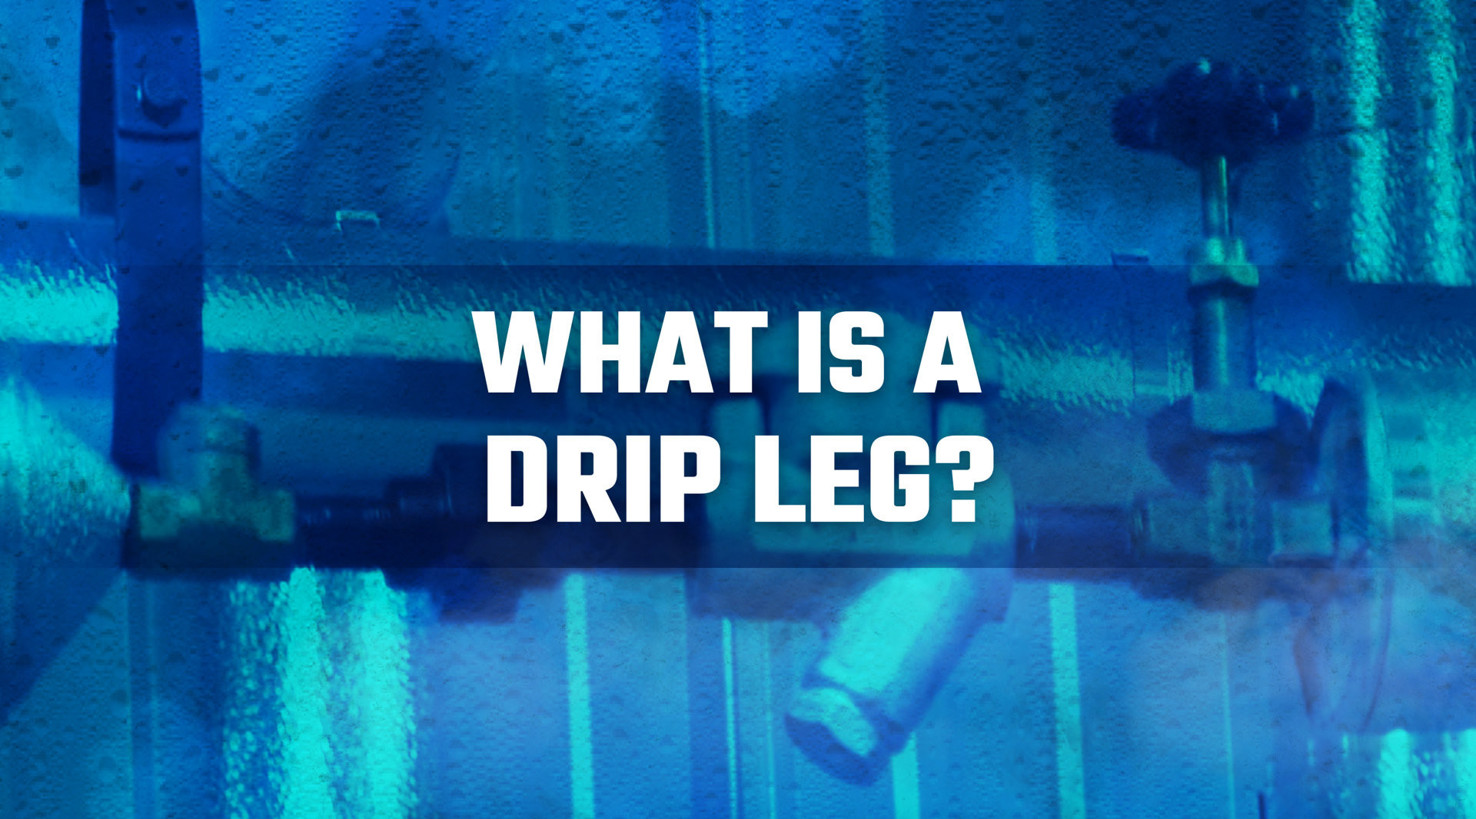 What is a Drip Leg?